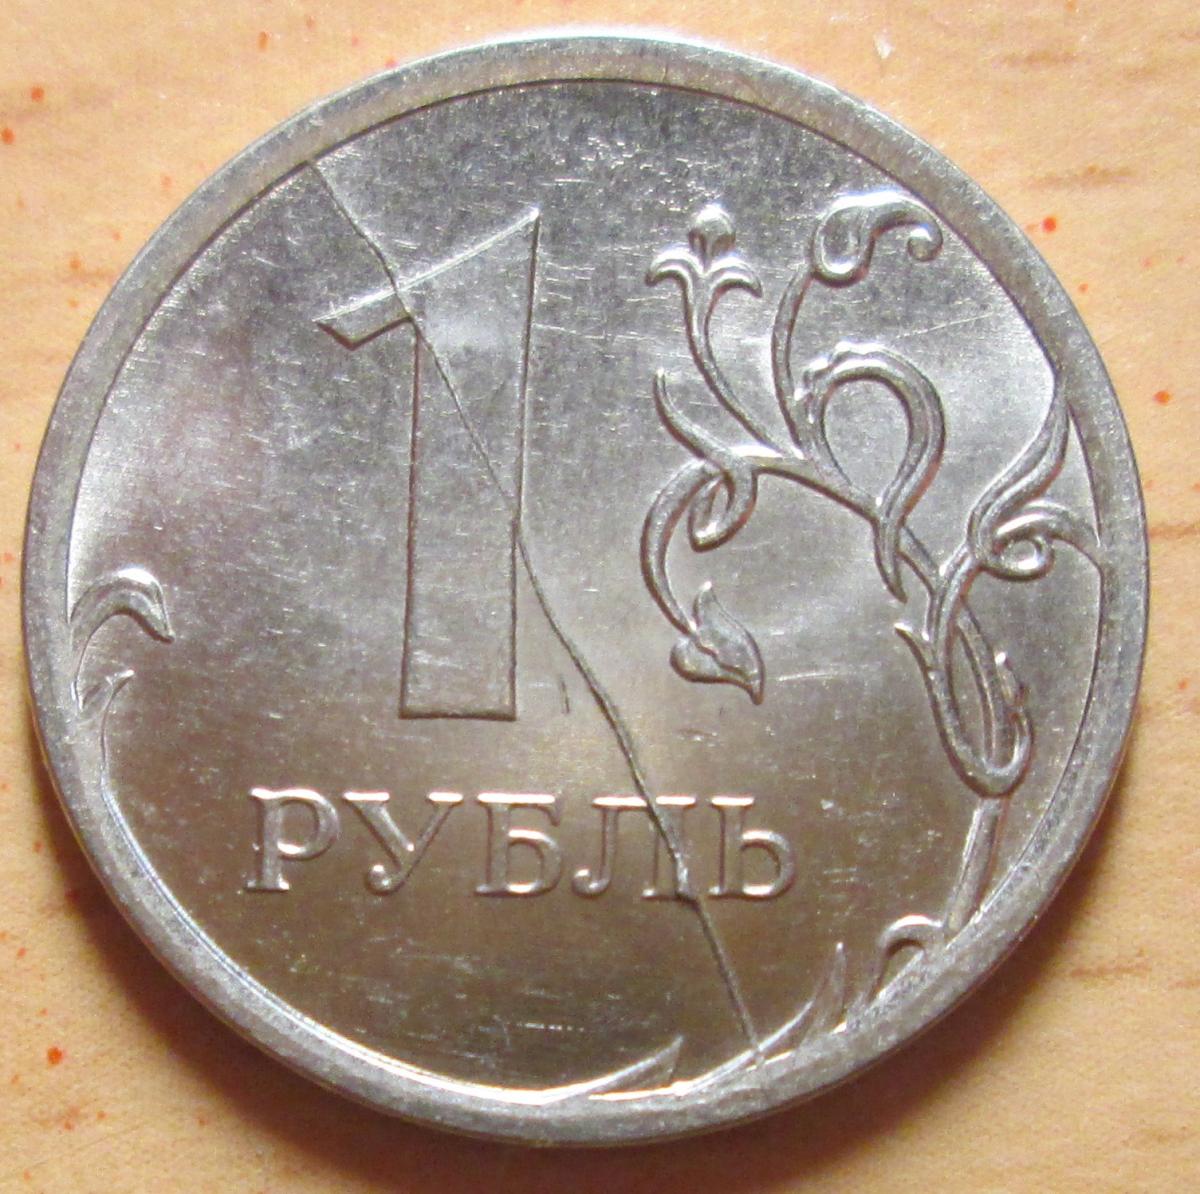 Цена 1 рубль купить. Брак монеты 1 рубль. Брак монеты раскол штемпеля. Бракованные монеты 1 рубль. 1 Рубль ММД 2013 брак штемпеля.